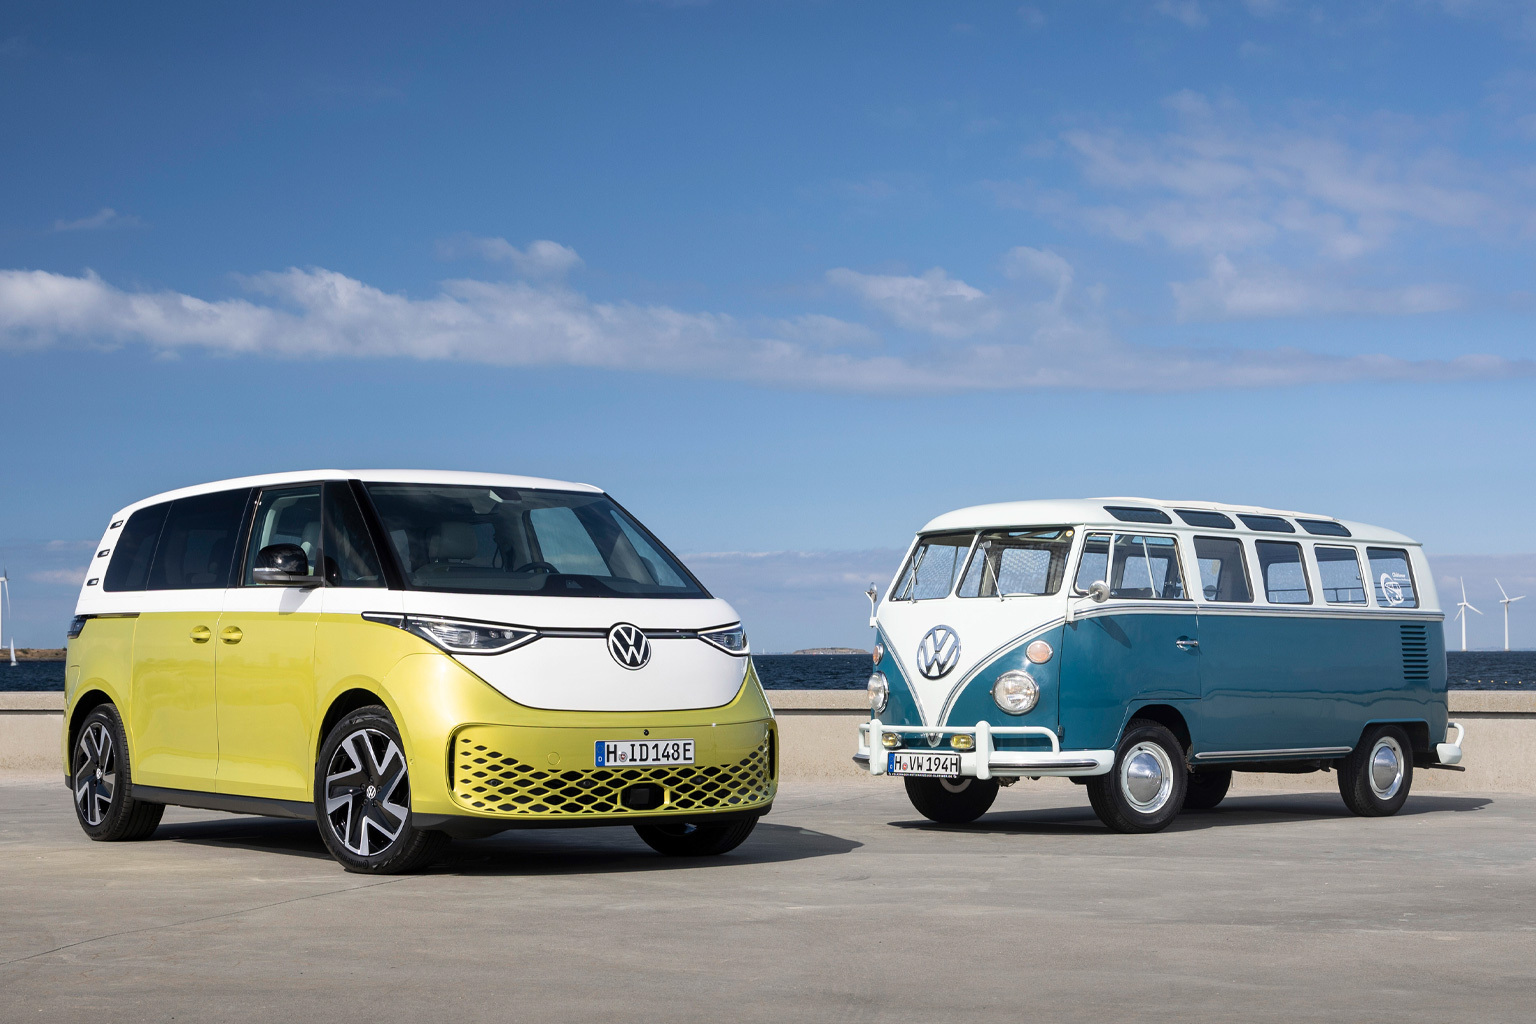 Foto von zwei VW-Bullis. Links im Bild parkt ein gelb-weißes Modell. Diesem zugewandt steht rechts ein blau-weißes Modell.